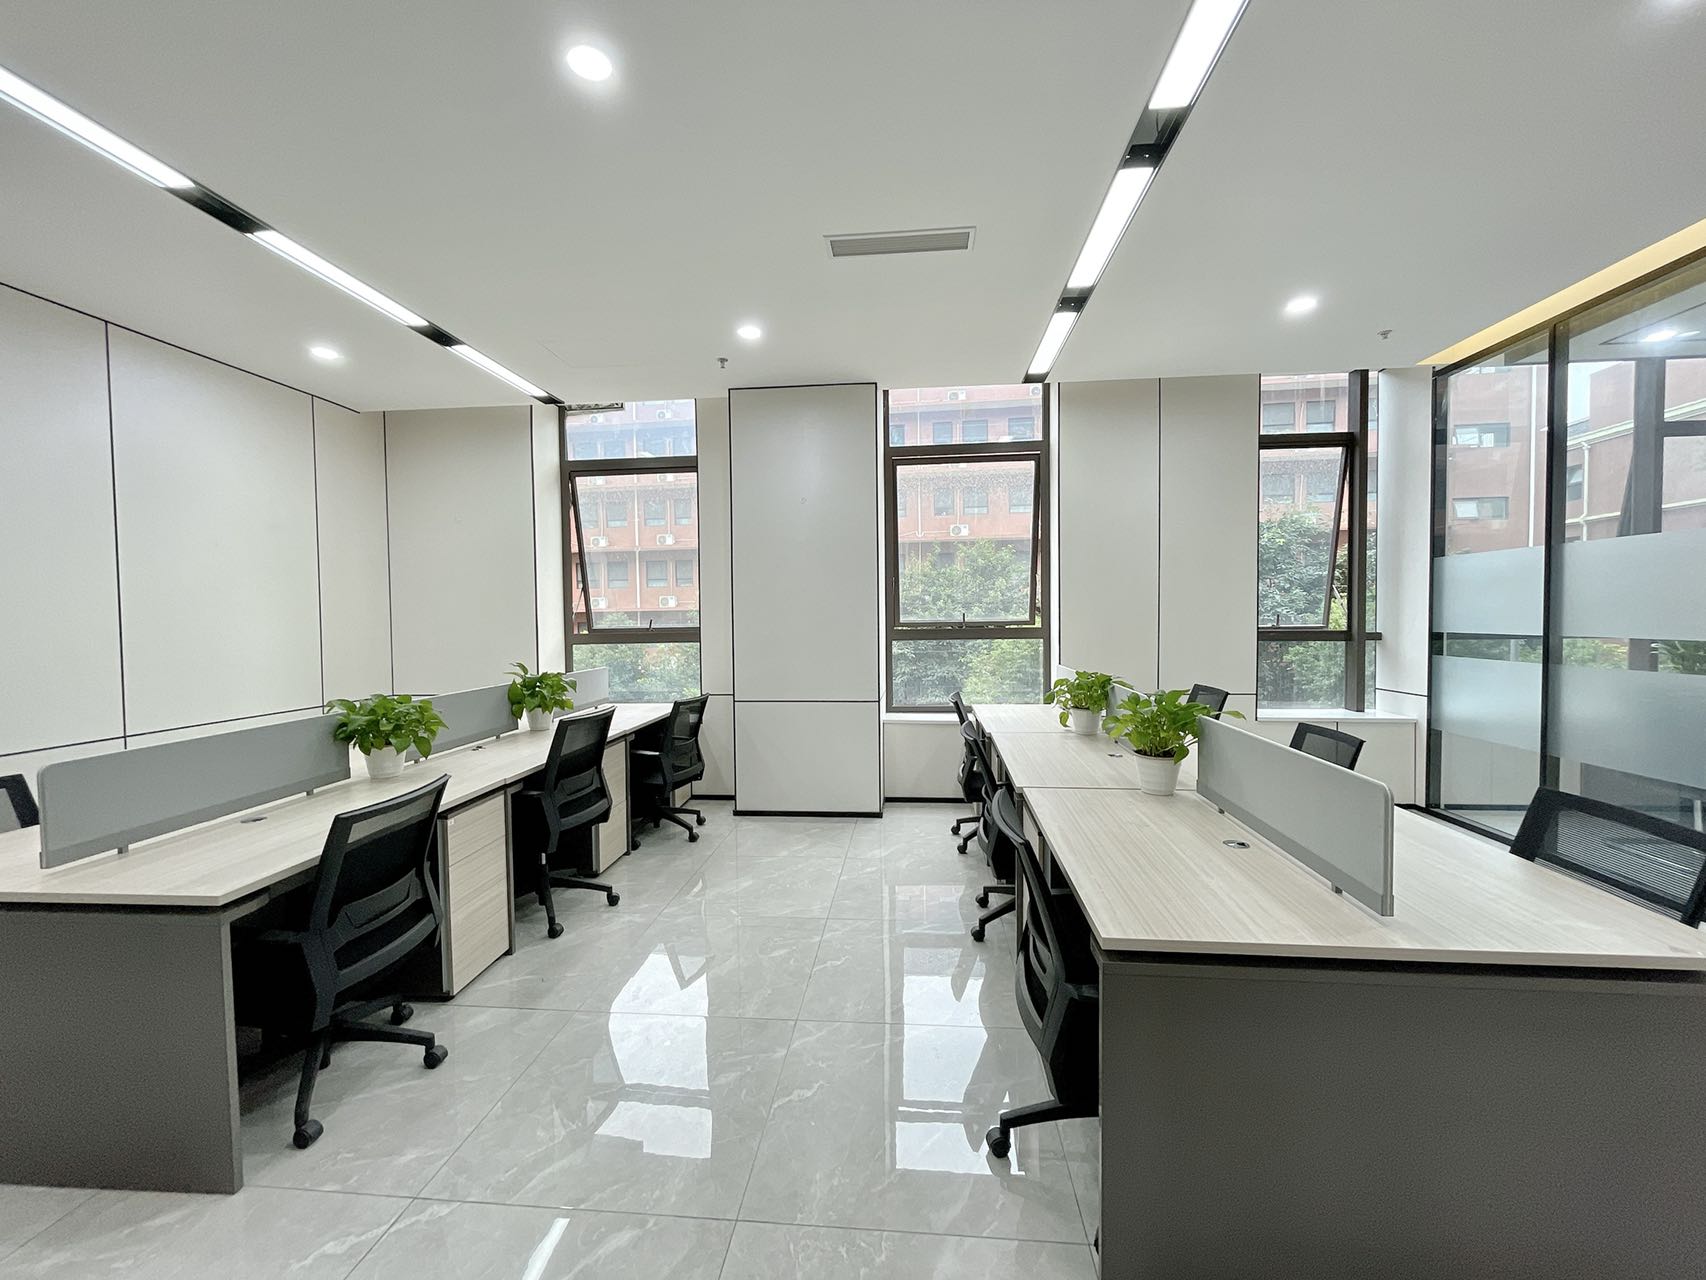 簇桥地铁口武侯区科创中心155平精装办公室3隔间12工位整体园区艺术风格